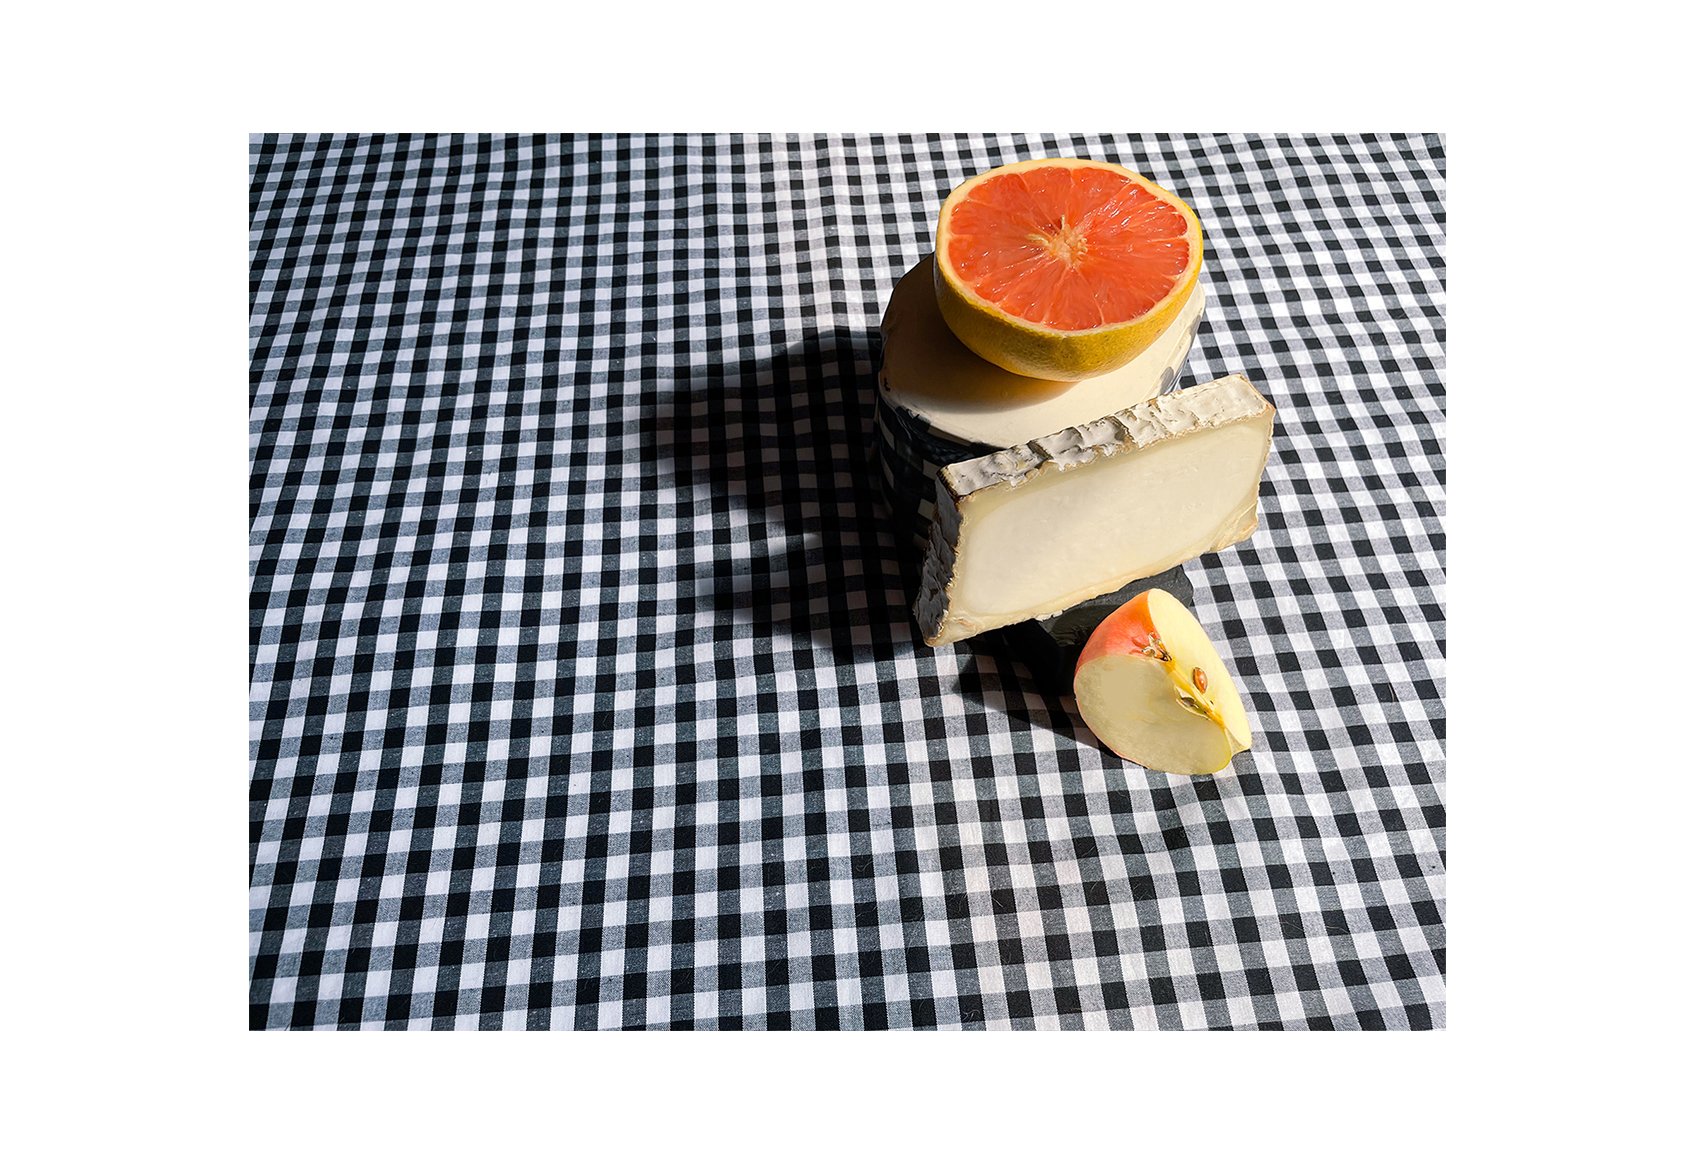 dagmara fruit and cheese 31.jpg